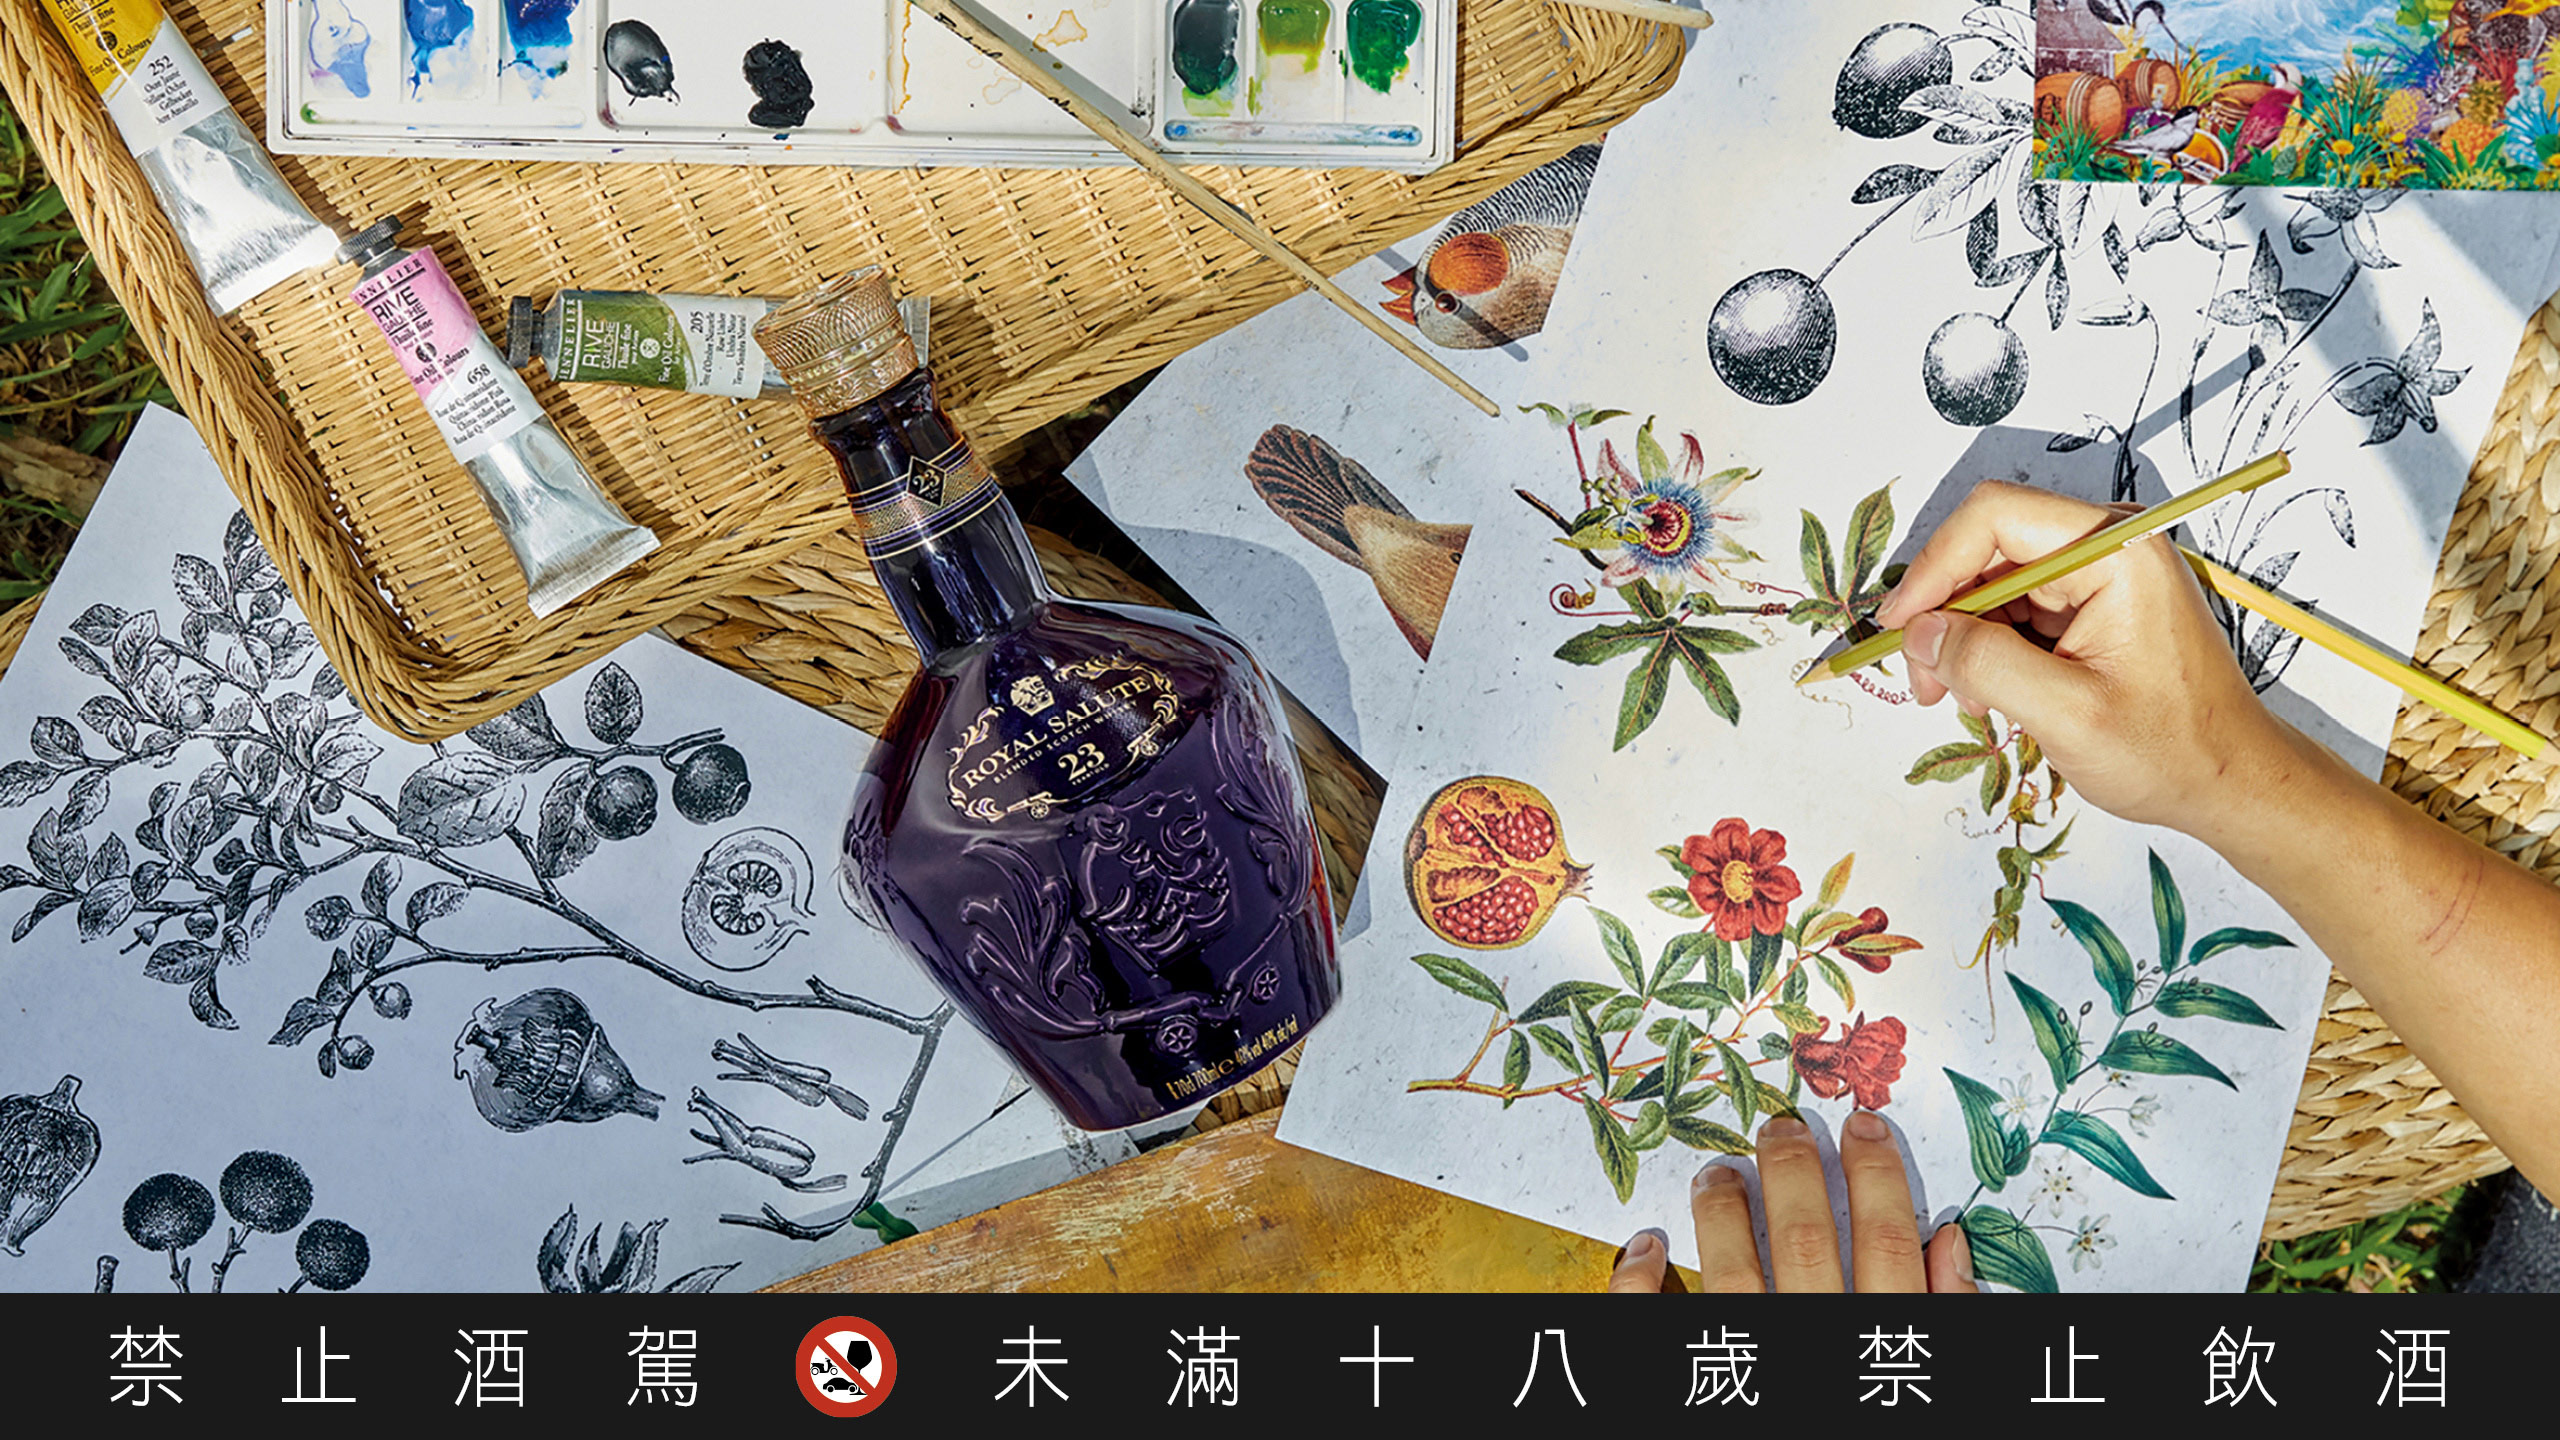 皇家禮炮曾與與國際級插畫藝術家劉經瑋合作，推出藝術家包裝。